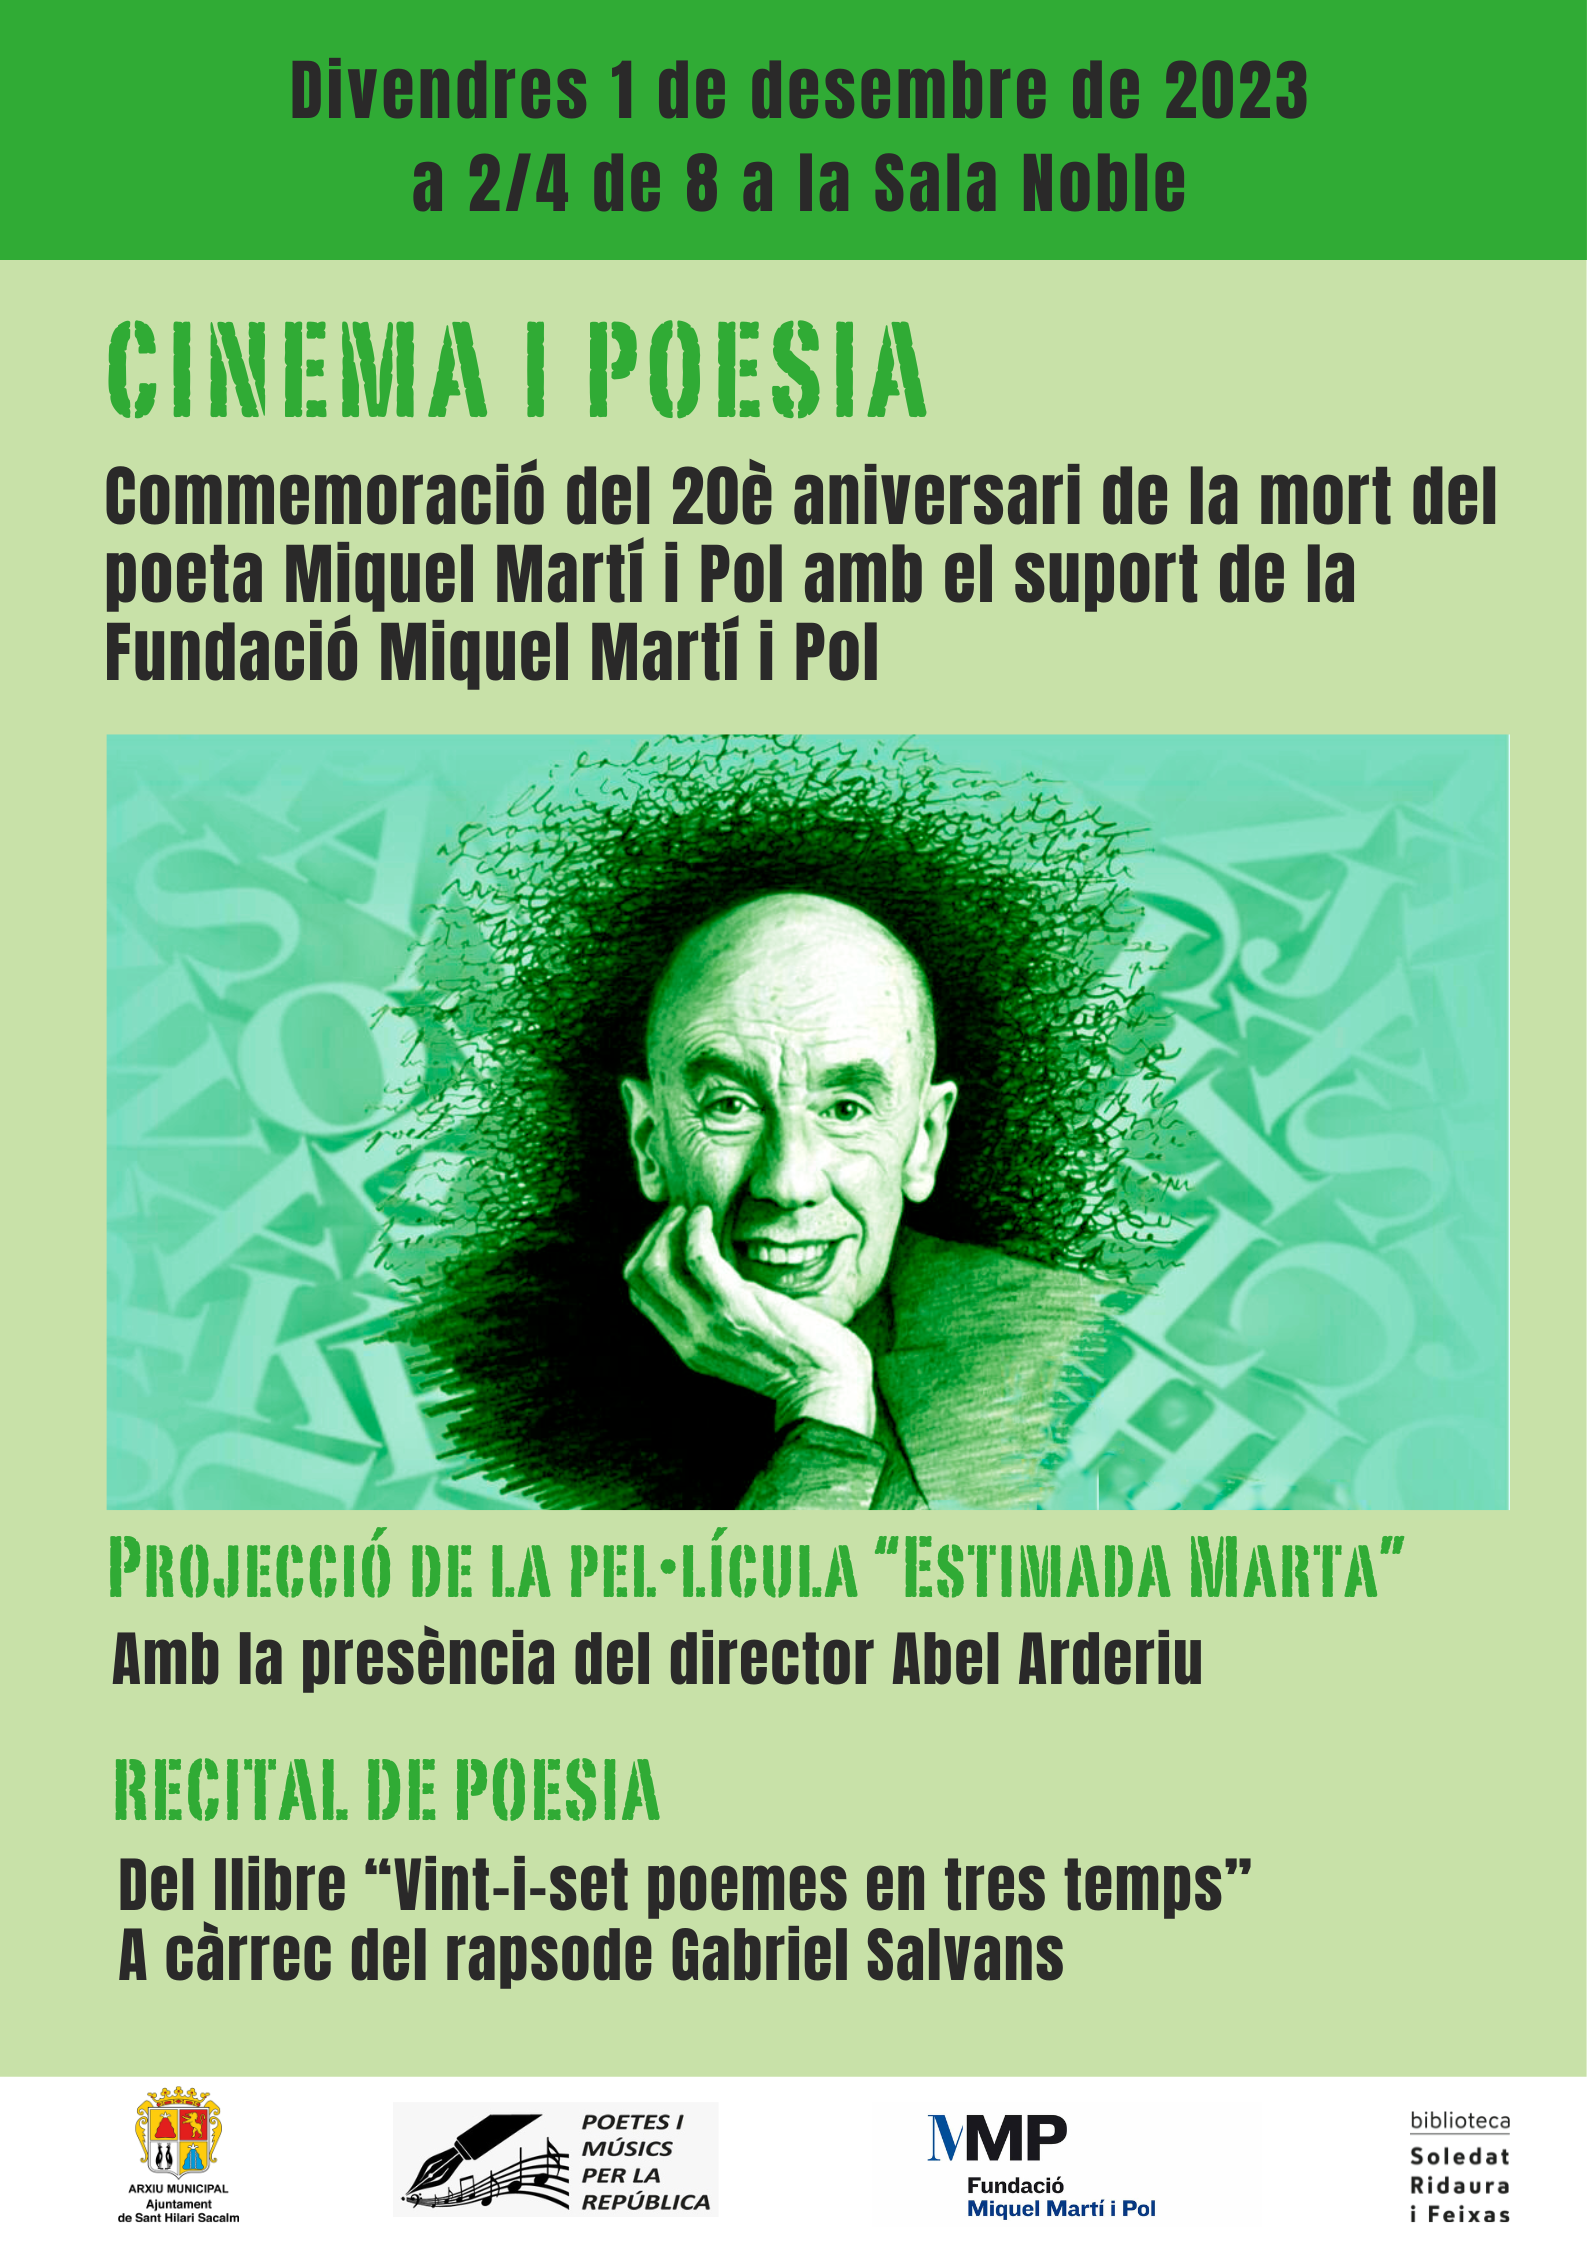 Cinema i poesia. Commemoració del 20è aniversari de la mort de Miquel Martí i Pol